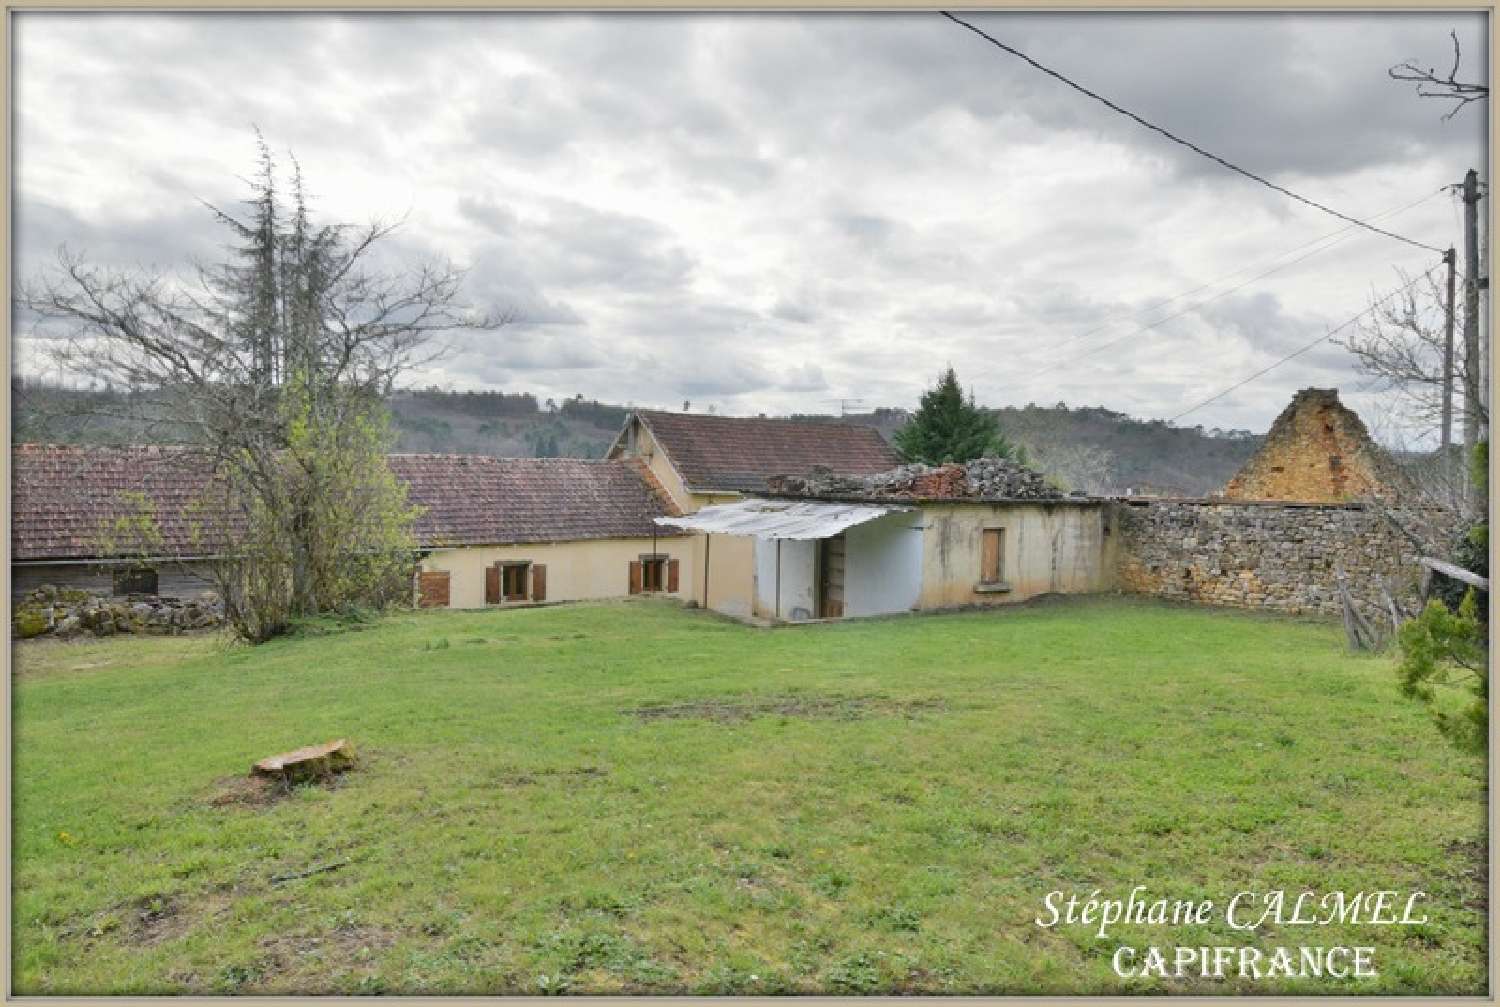  à vendre ferme Campagnac-lès-Quercy Dordogne 4